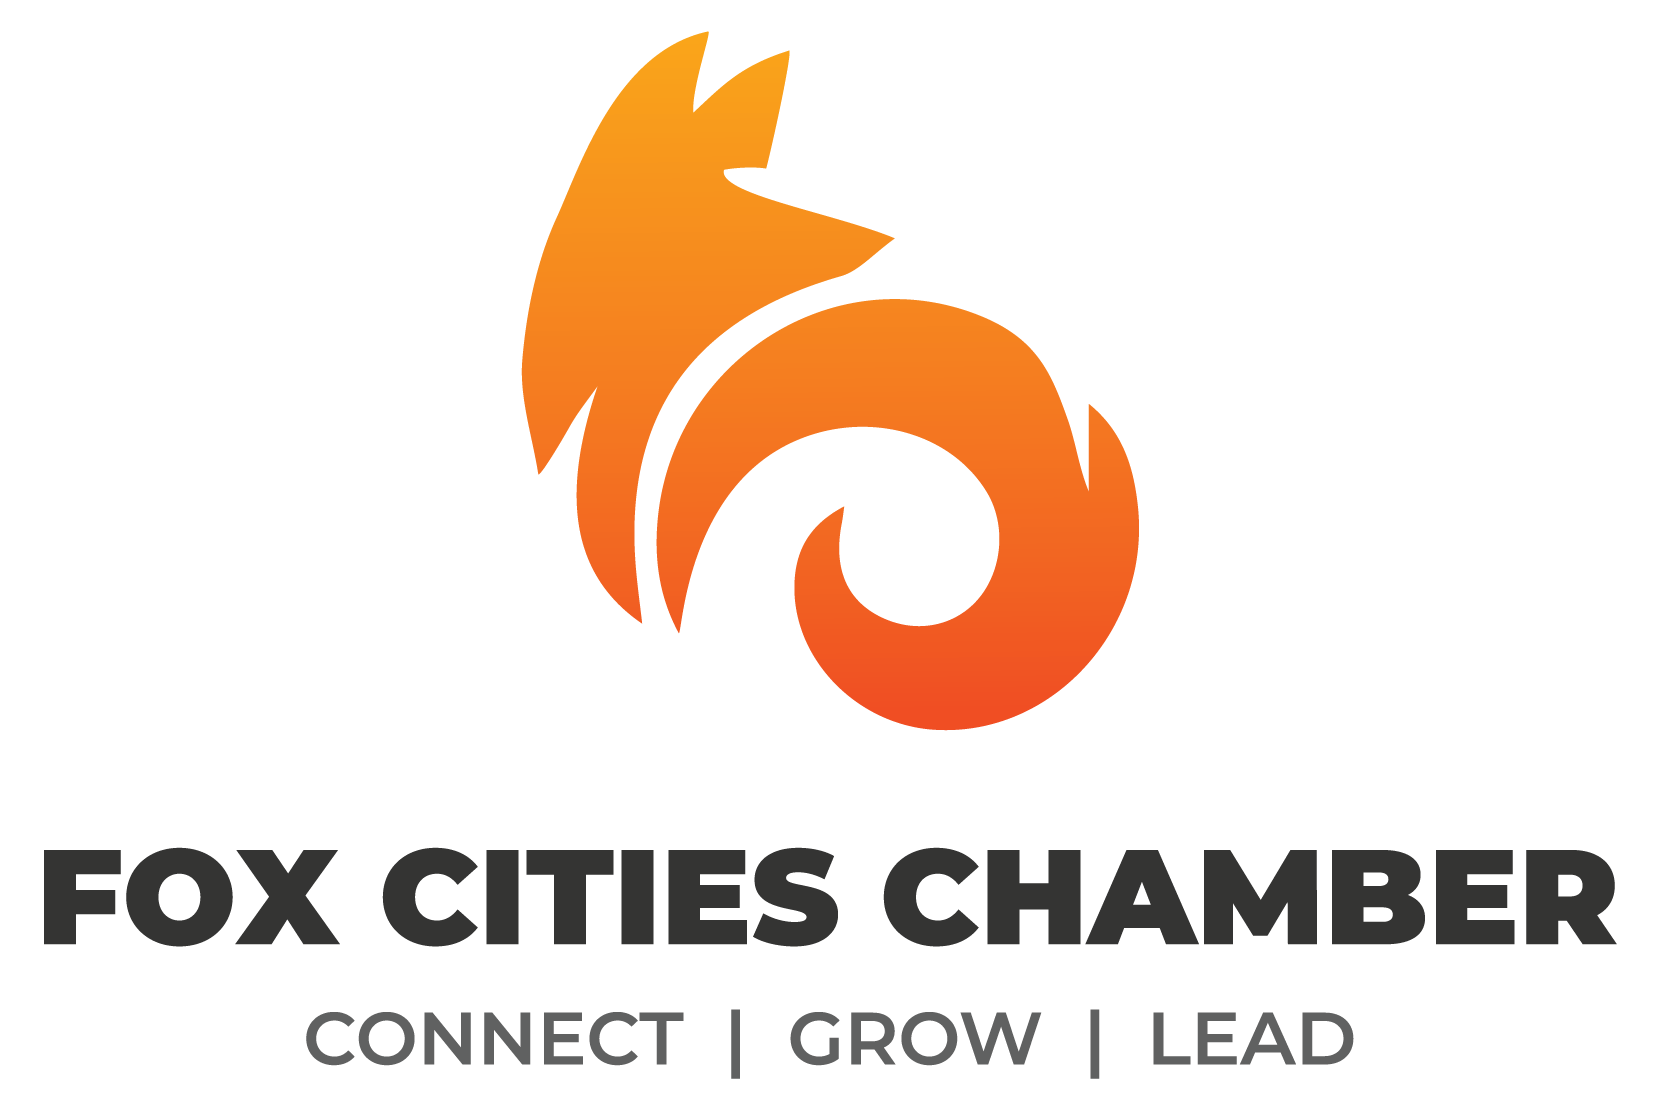 Fox Cities Chamber of Commerce